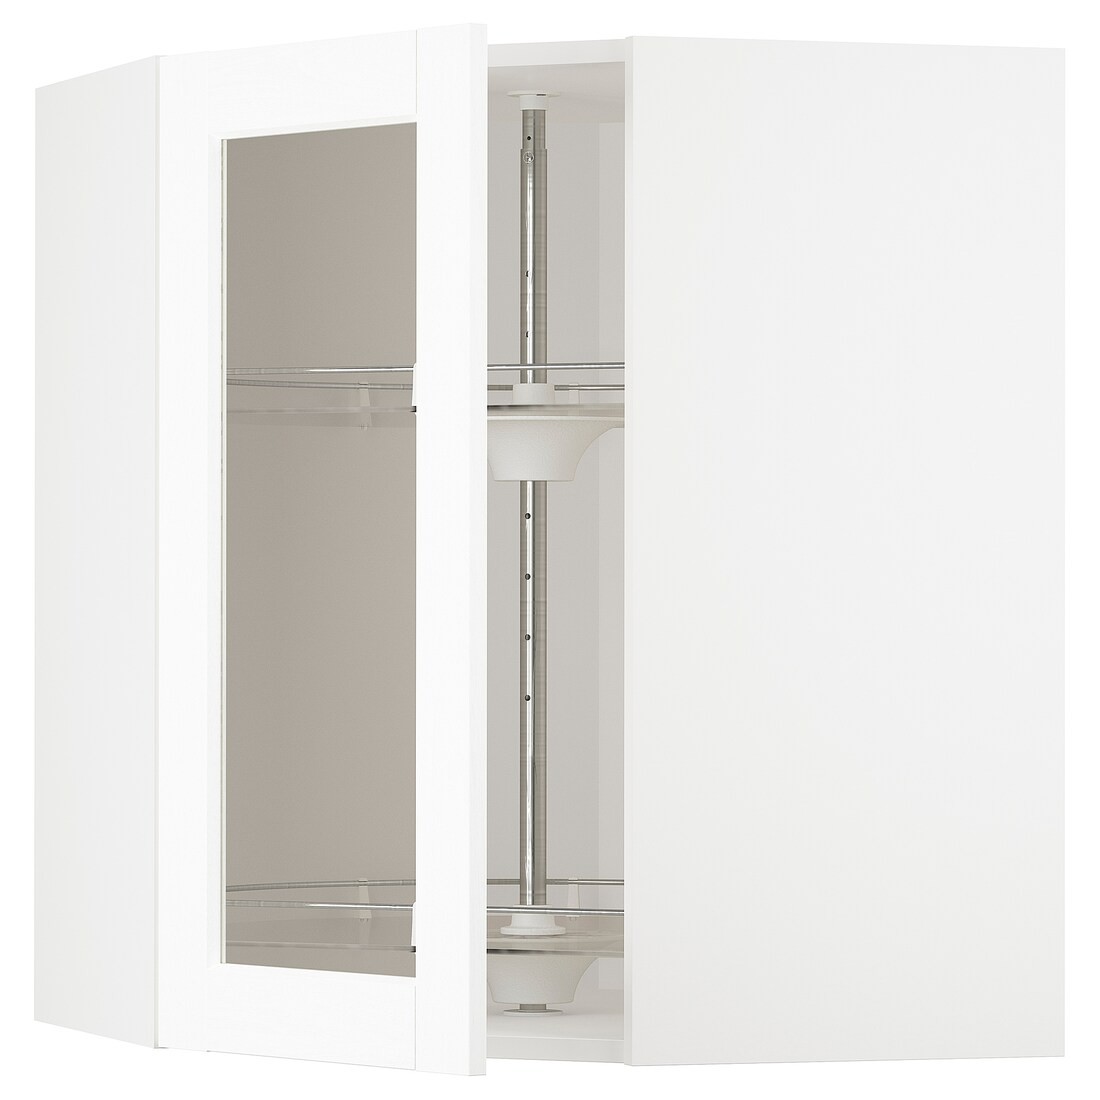 METOD МЕТОД Угловой настенный шкаф с каруселью / стеклянная дверь, белый Enköping / белый имитация дерева, 68x80 см